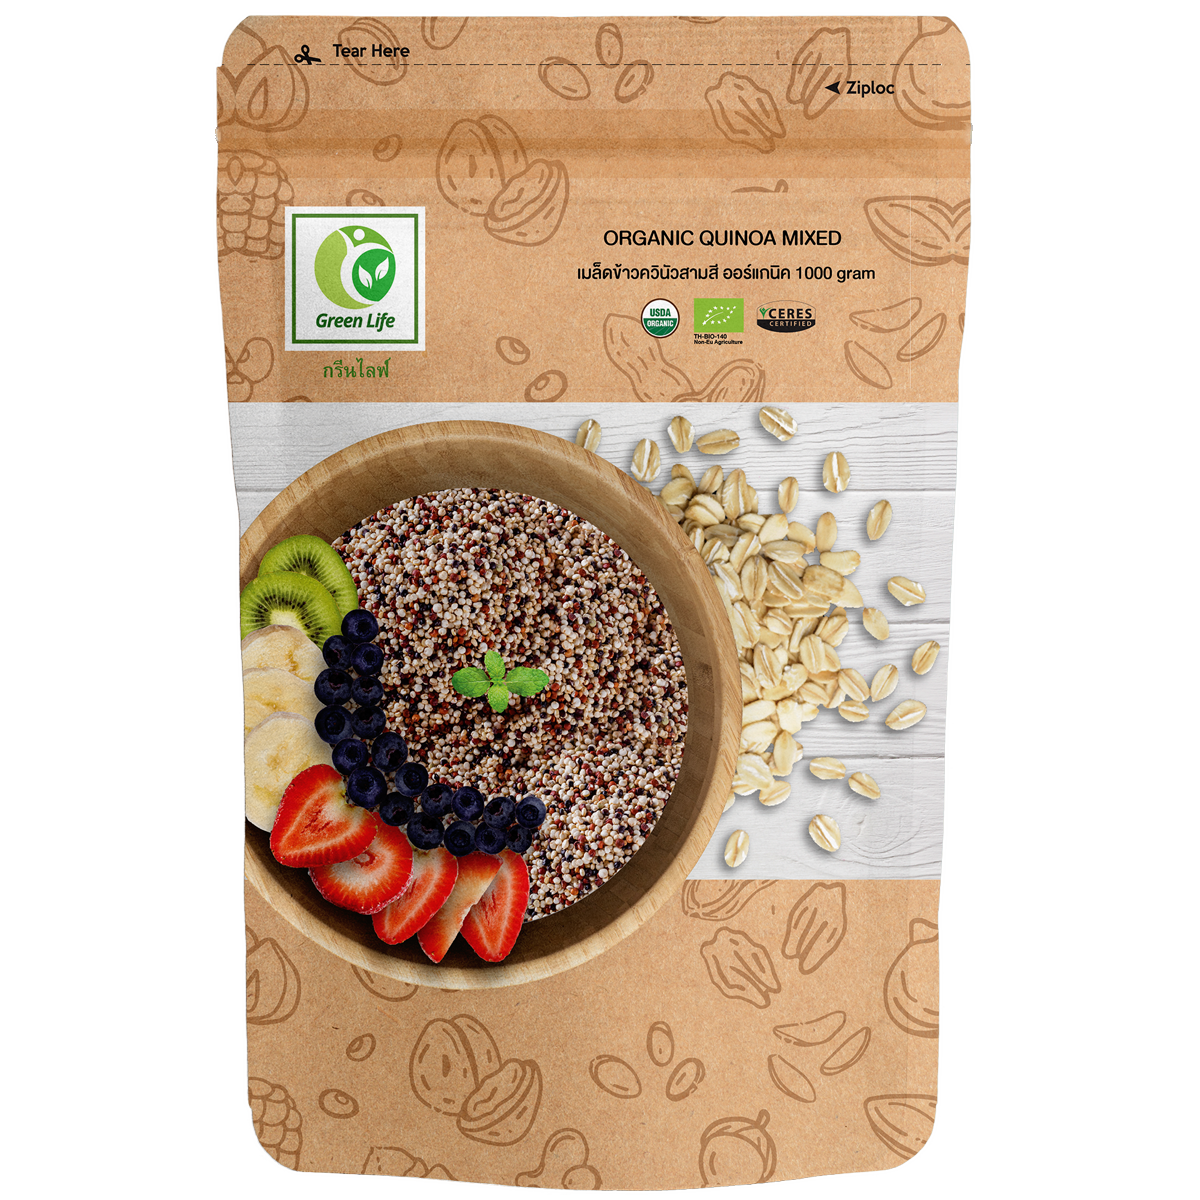 Organic Quinoa Mixed 1 kg